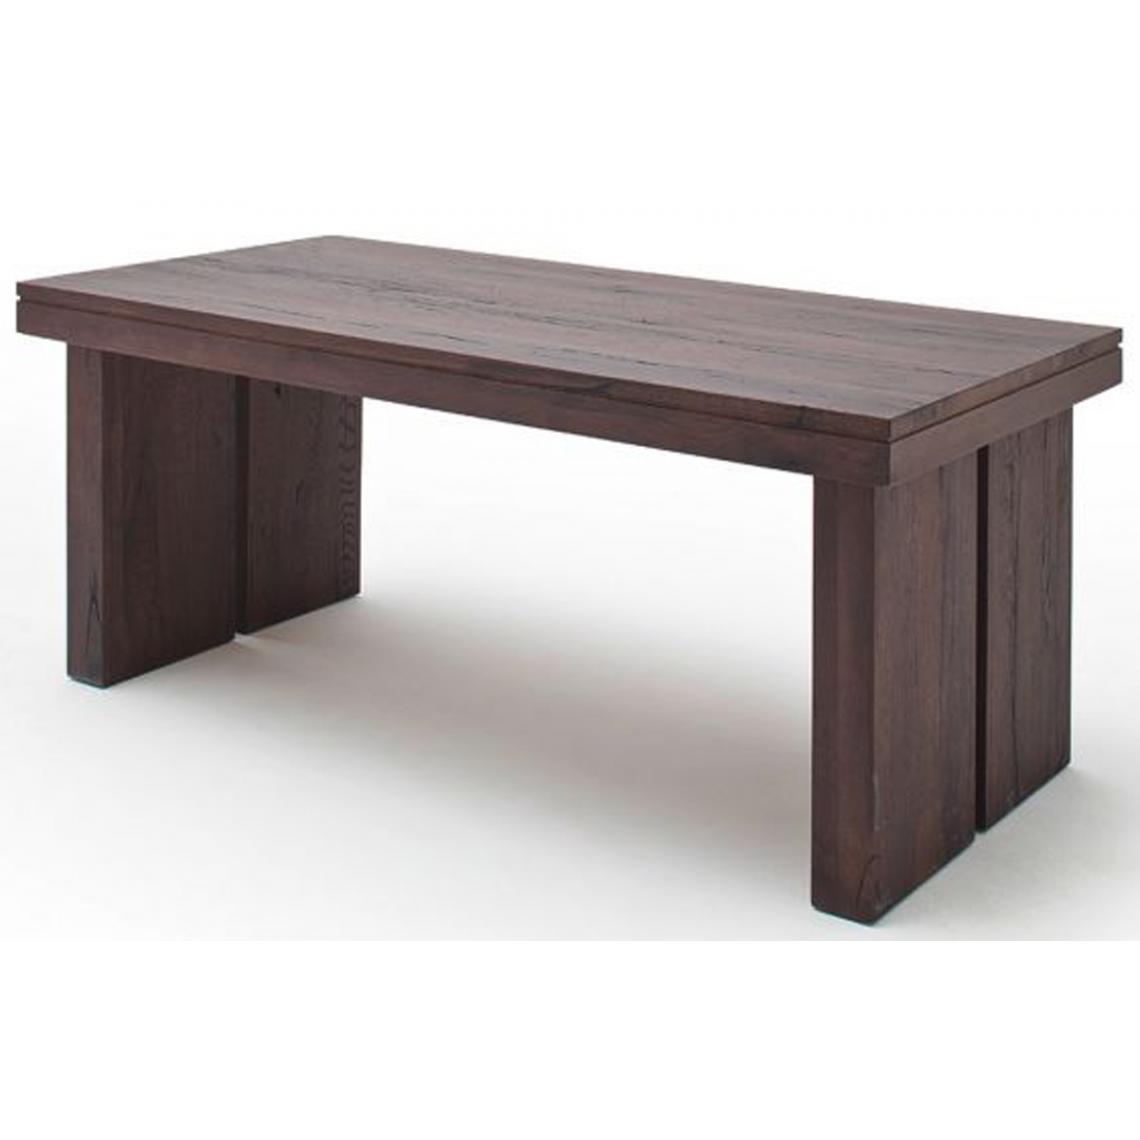 Pegane - Table à manger rectangulaire en chêne massif patiné laqué mat - L.260 x H.76 x P.100 cm - Tables à manger